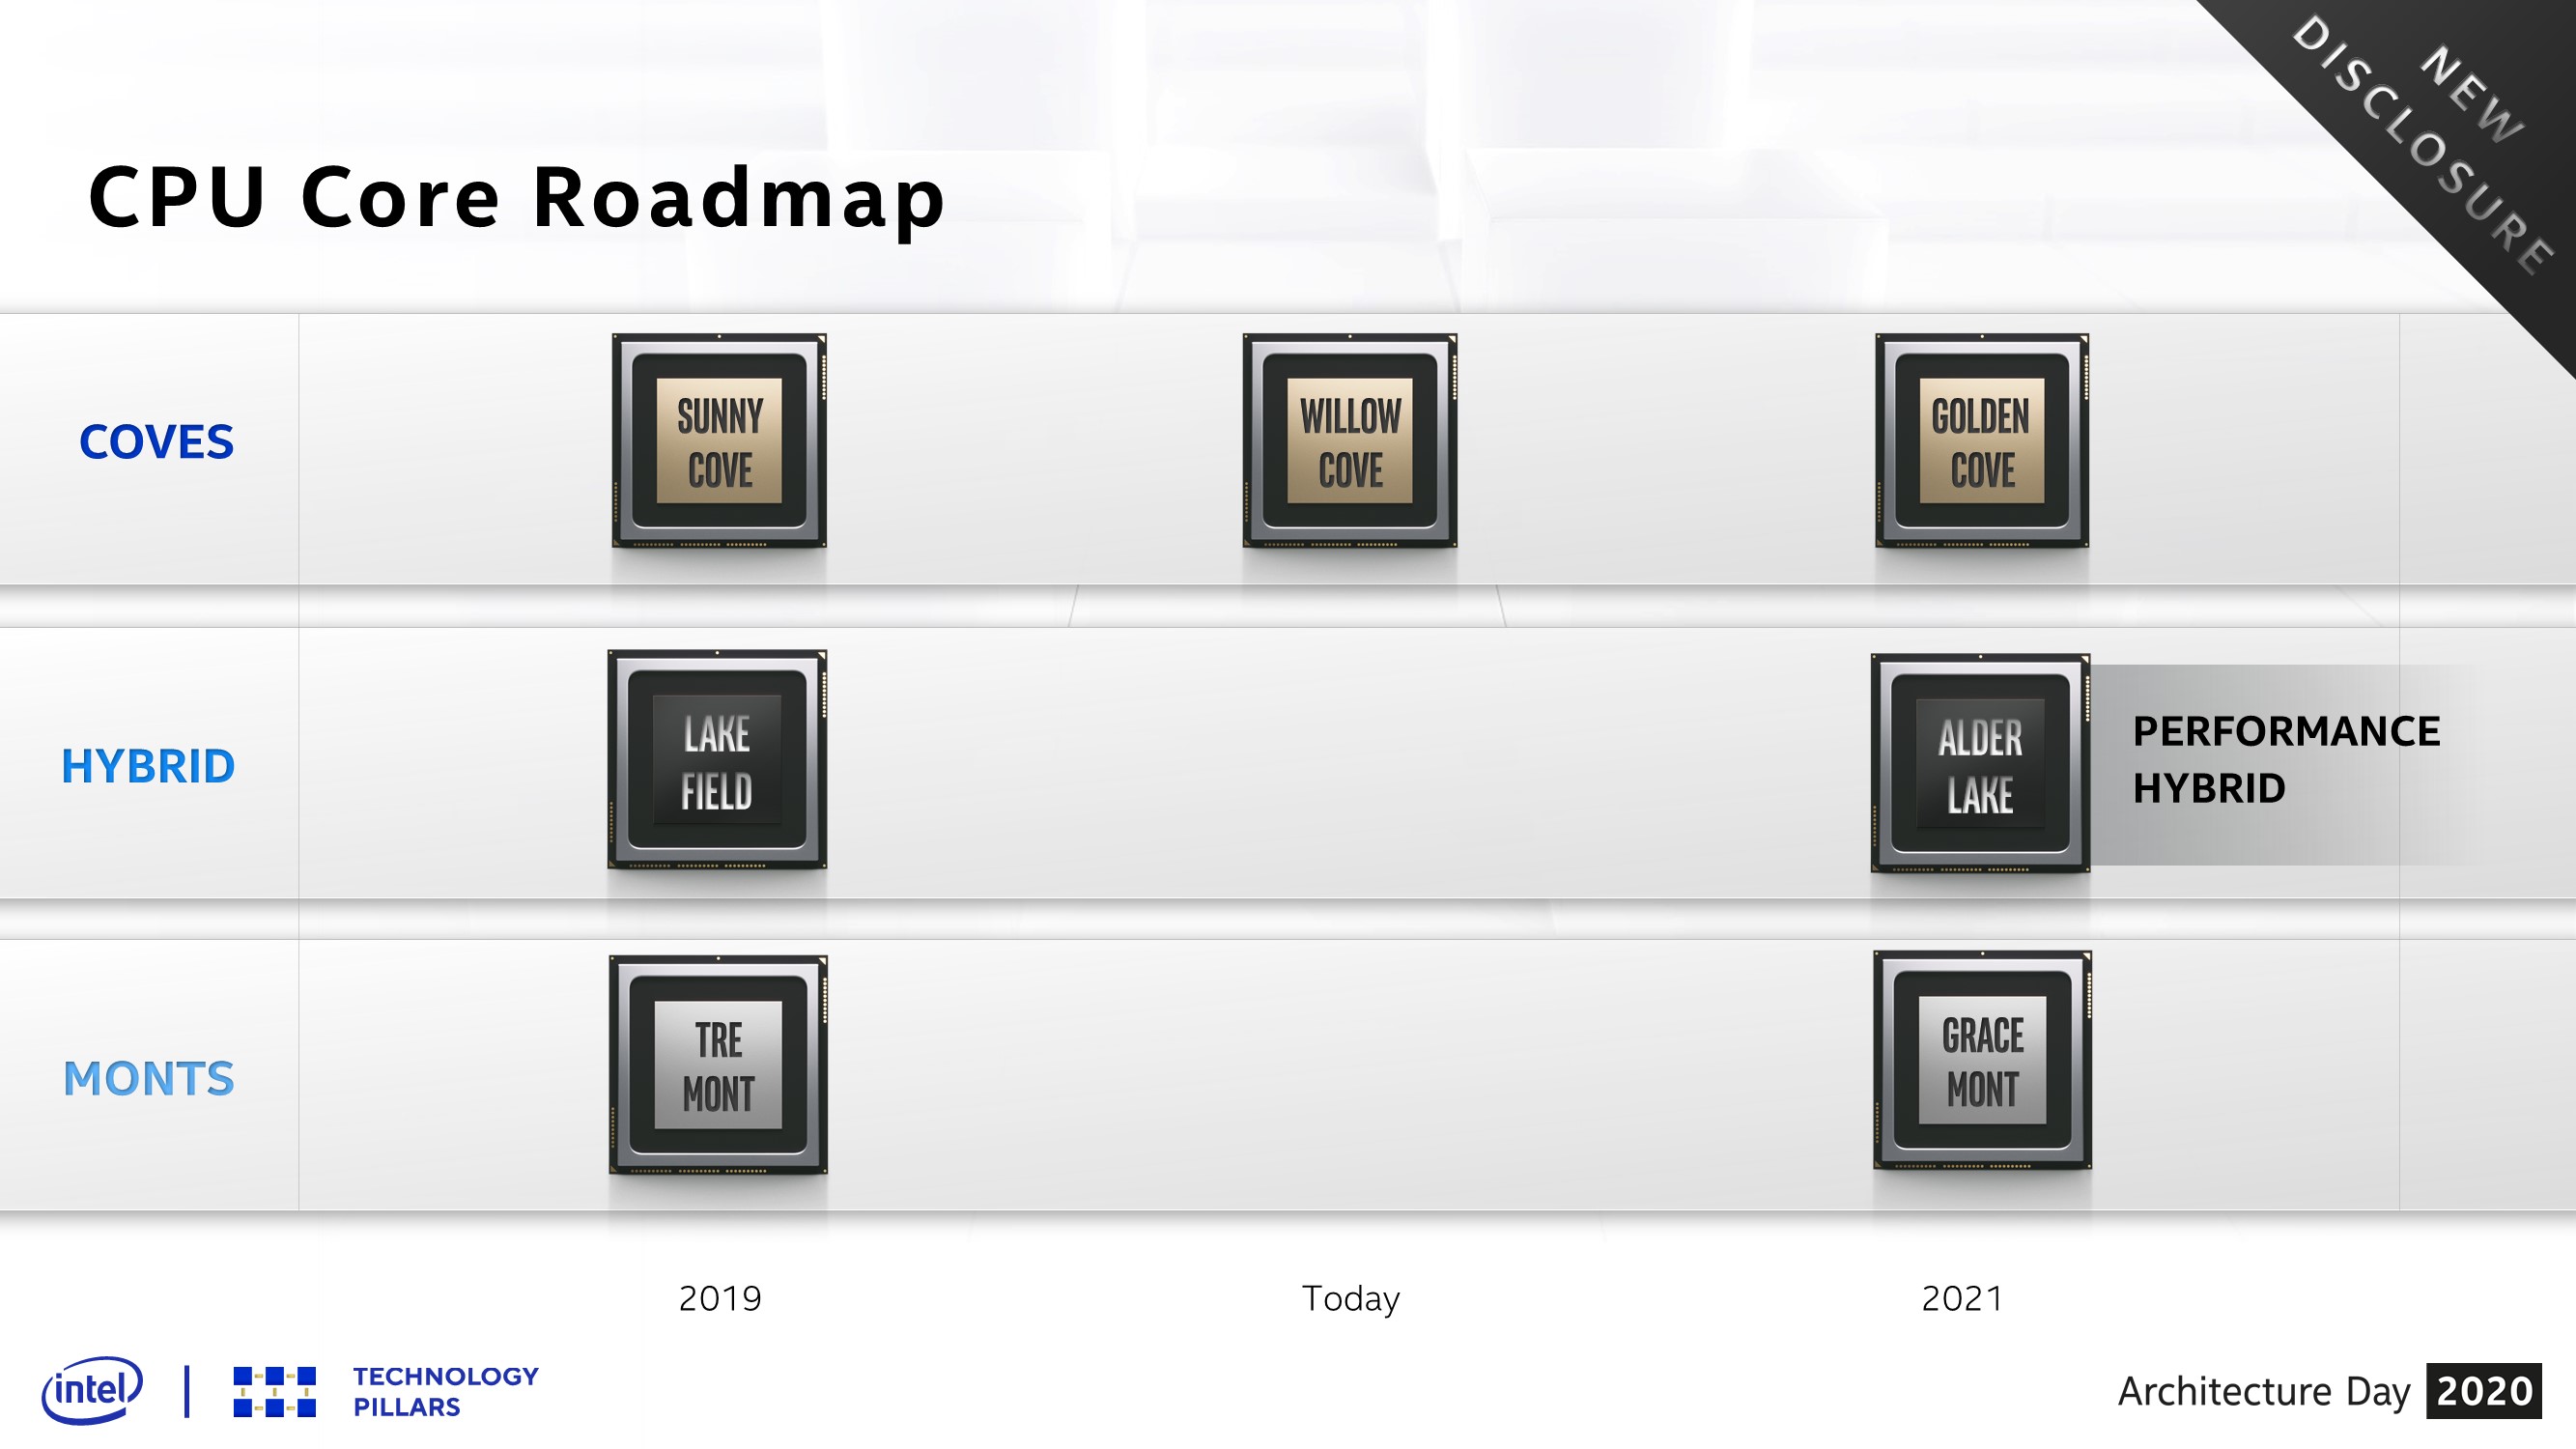 Intel Architecture Day 2020 - CPU Core Roadmap